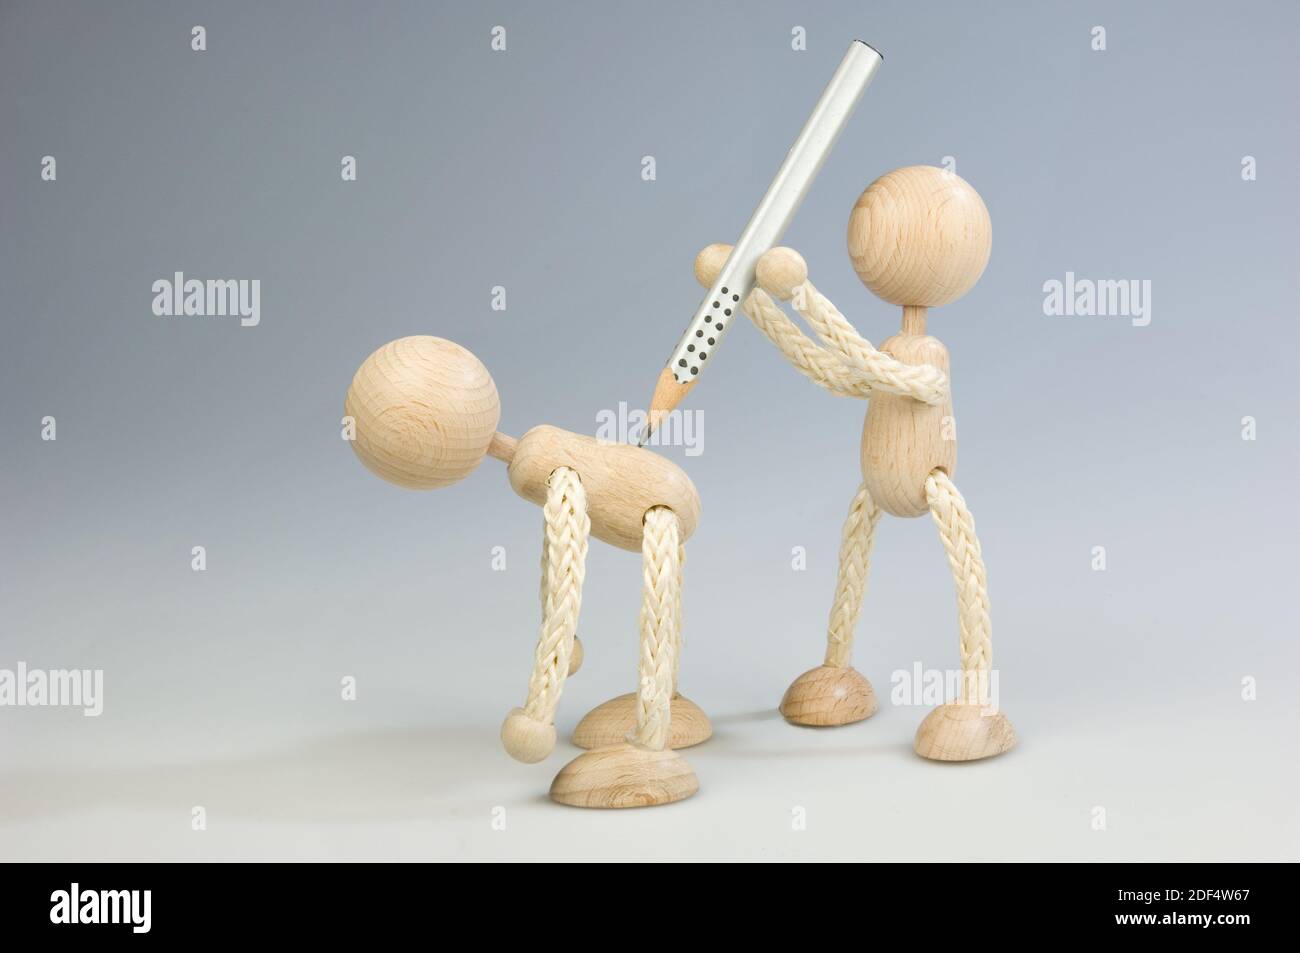 Zwei Holzfiguren, eine attackiert die andere mit einem Bleistift Stock Photo